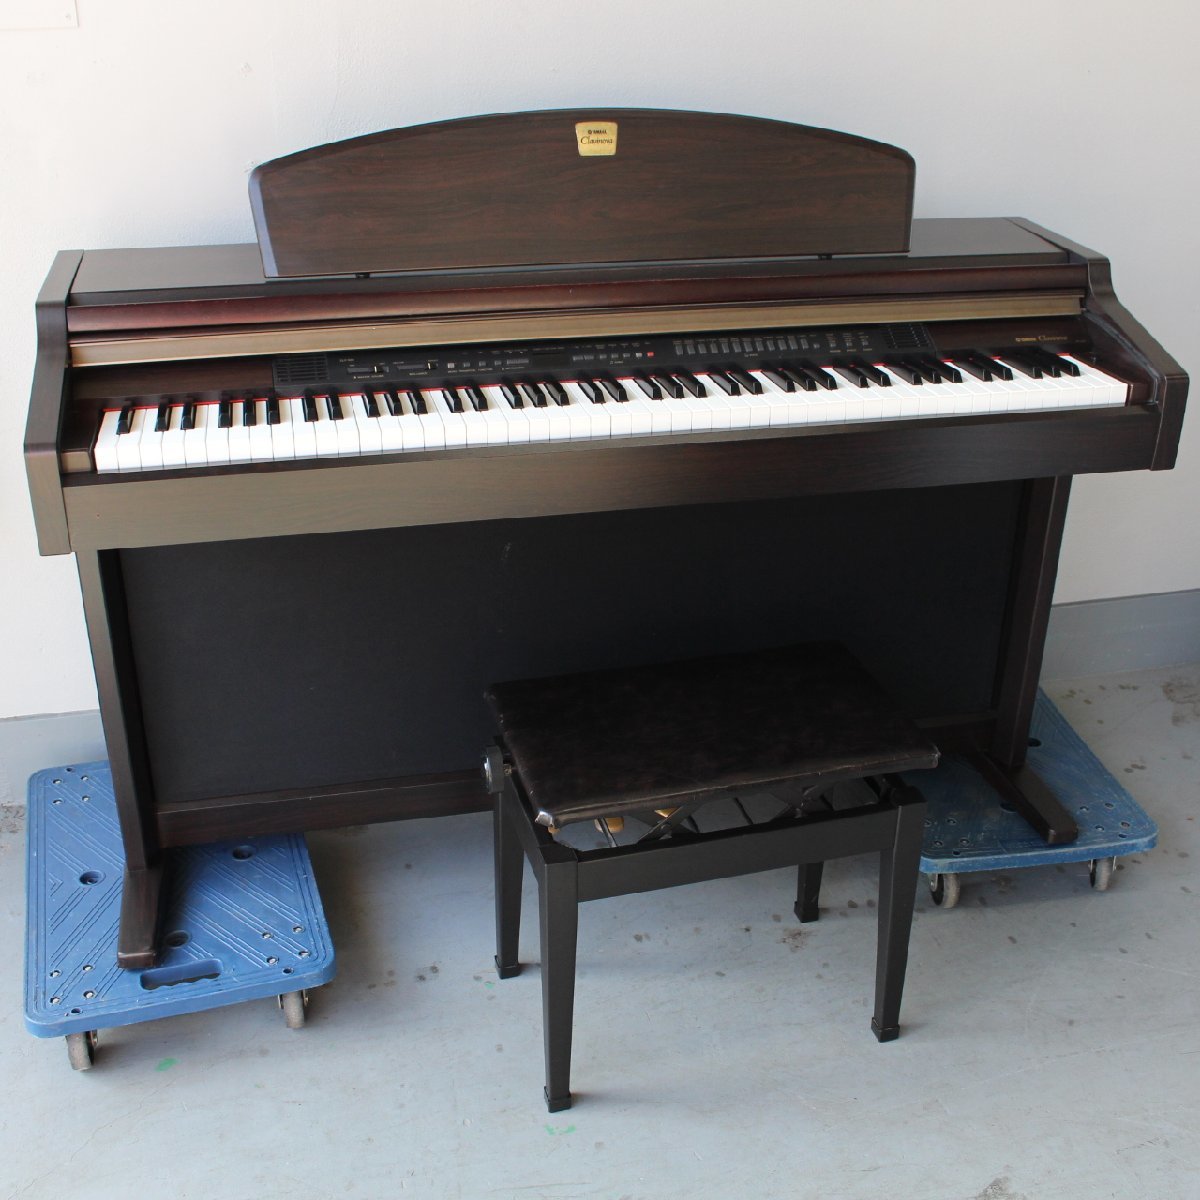 東京都狛江市にて ヤマハ 電子ピアノ clavinova CLP-950 88鍵 2000年製 を出張買取させて頂きました。